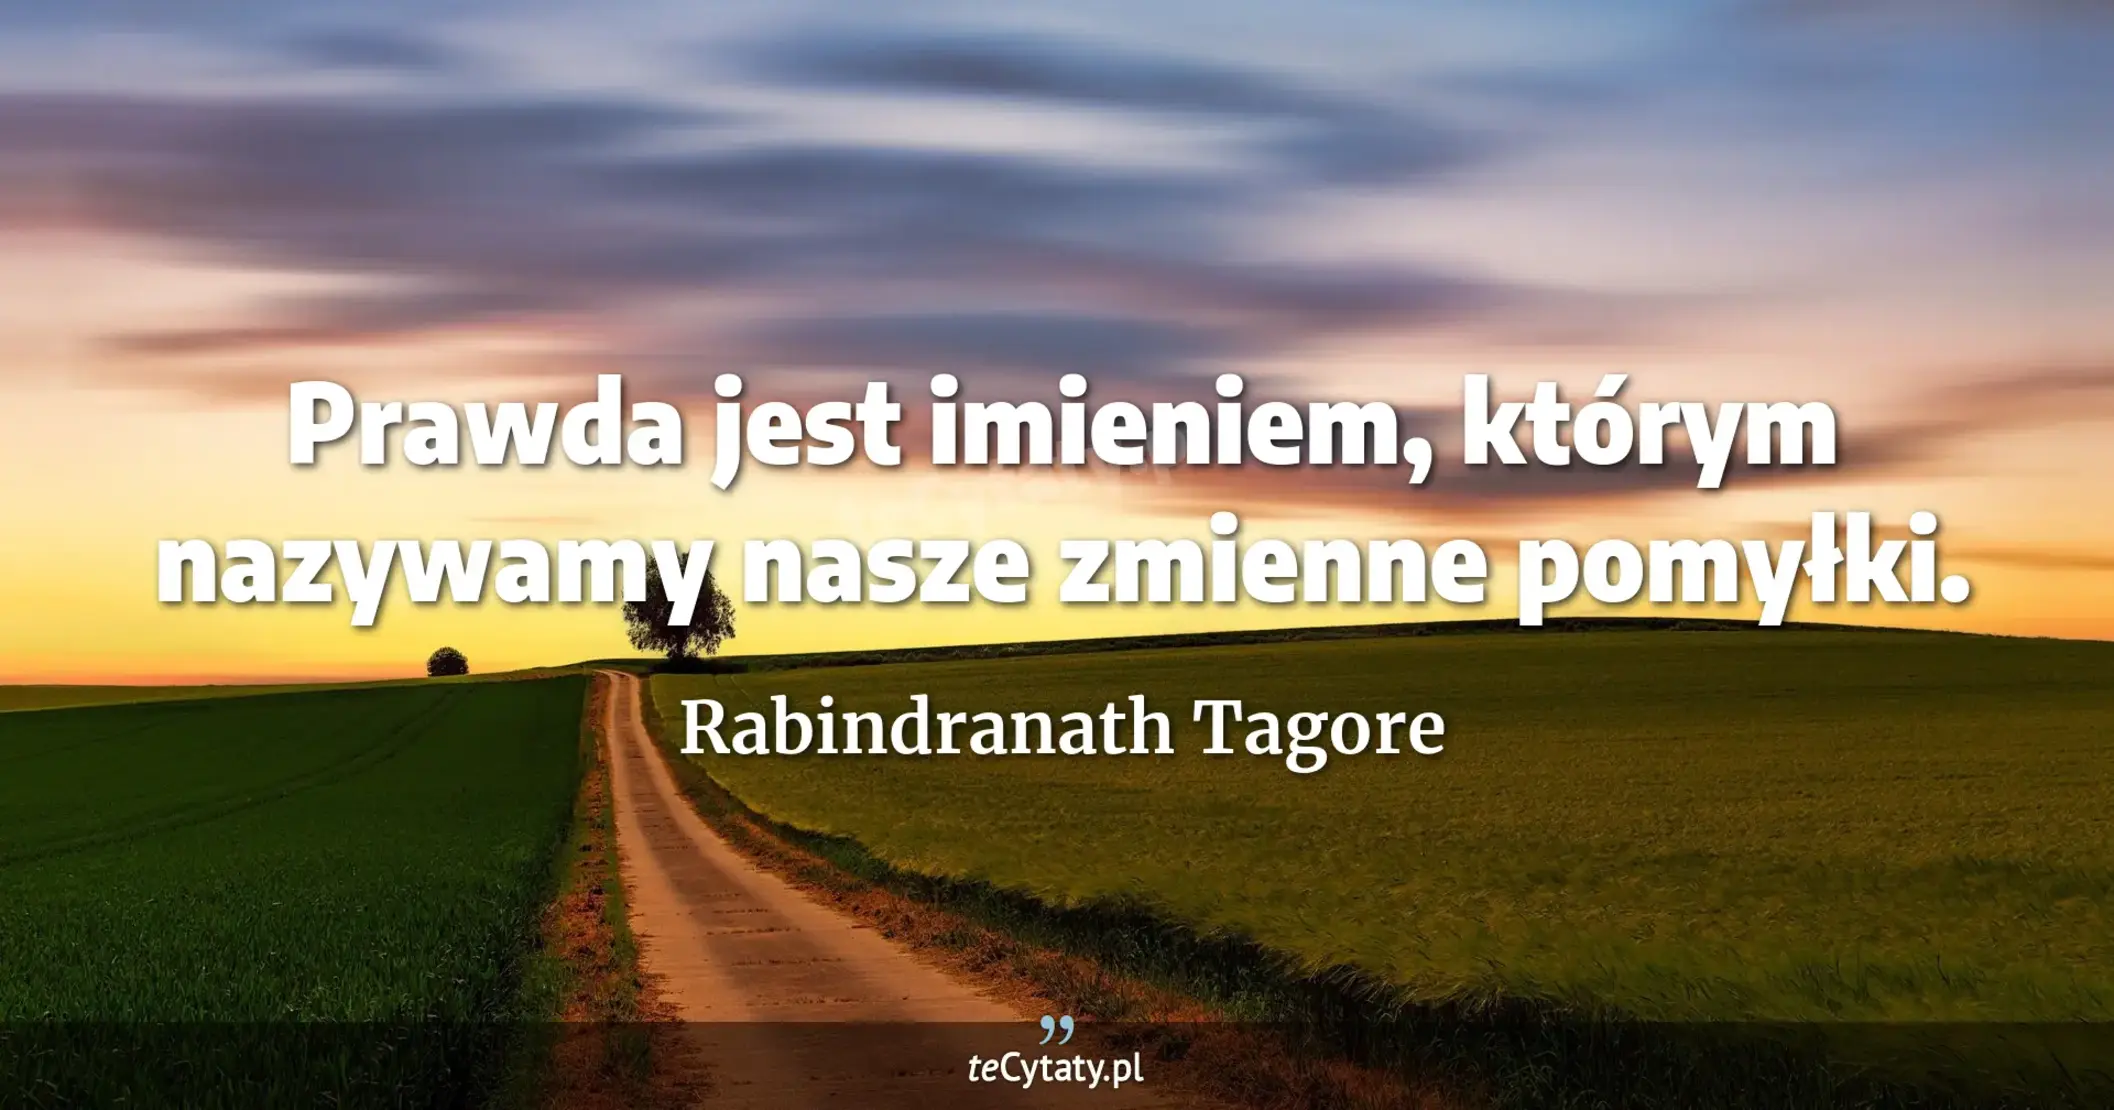 Prawda jest imieniem, którym nazywamy nasze zmienne pomyłki. - Rabindranath Tagore